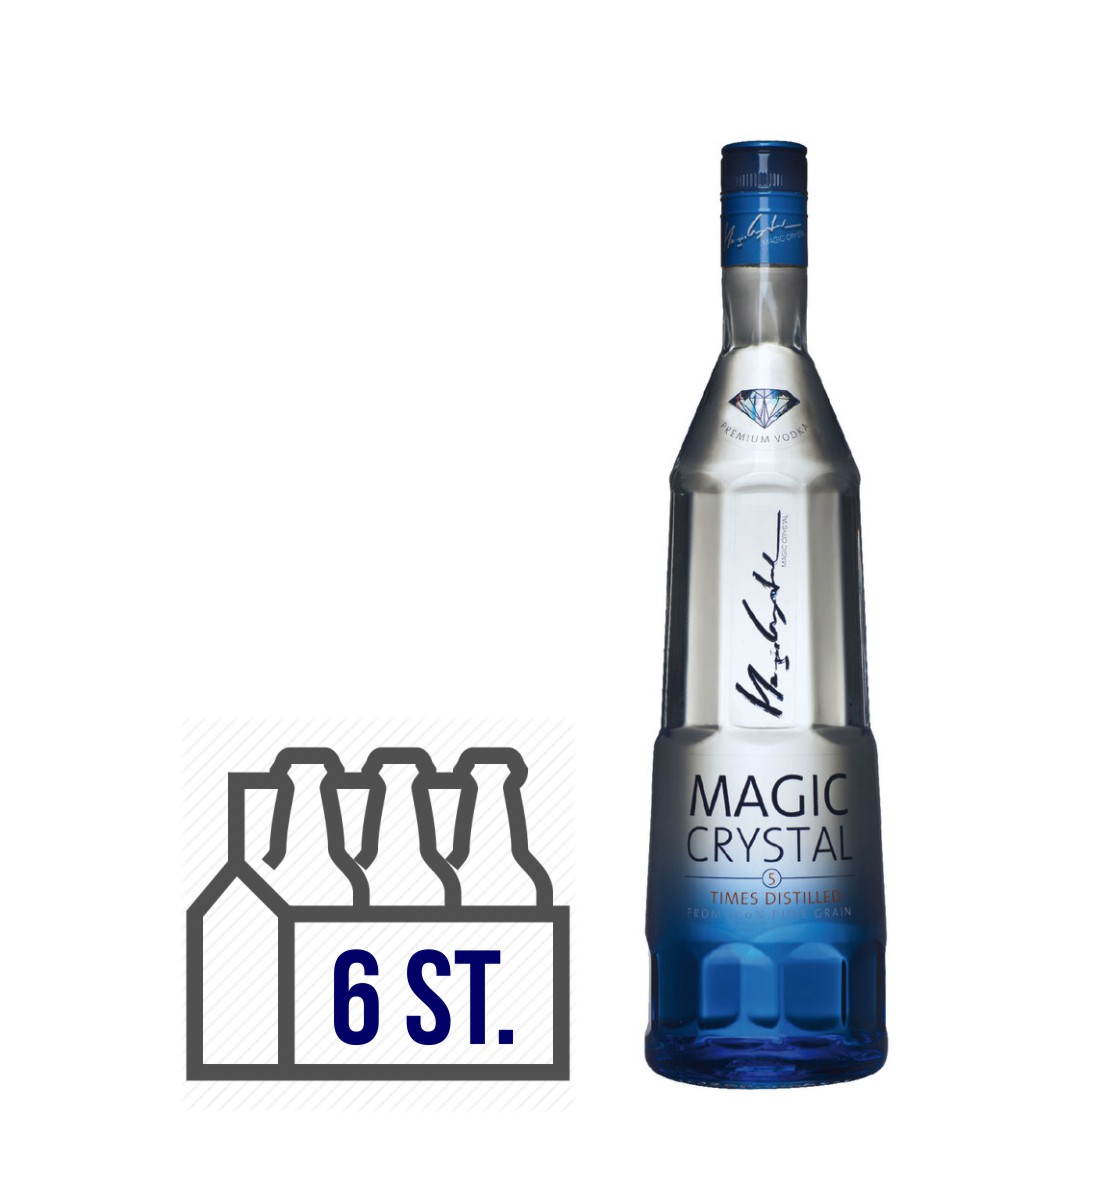 Magic Crystal Premium Vodka BAX 6 st. x 0.7L 0.7L